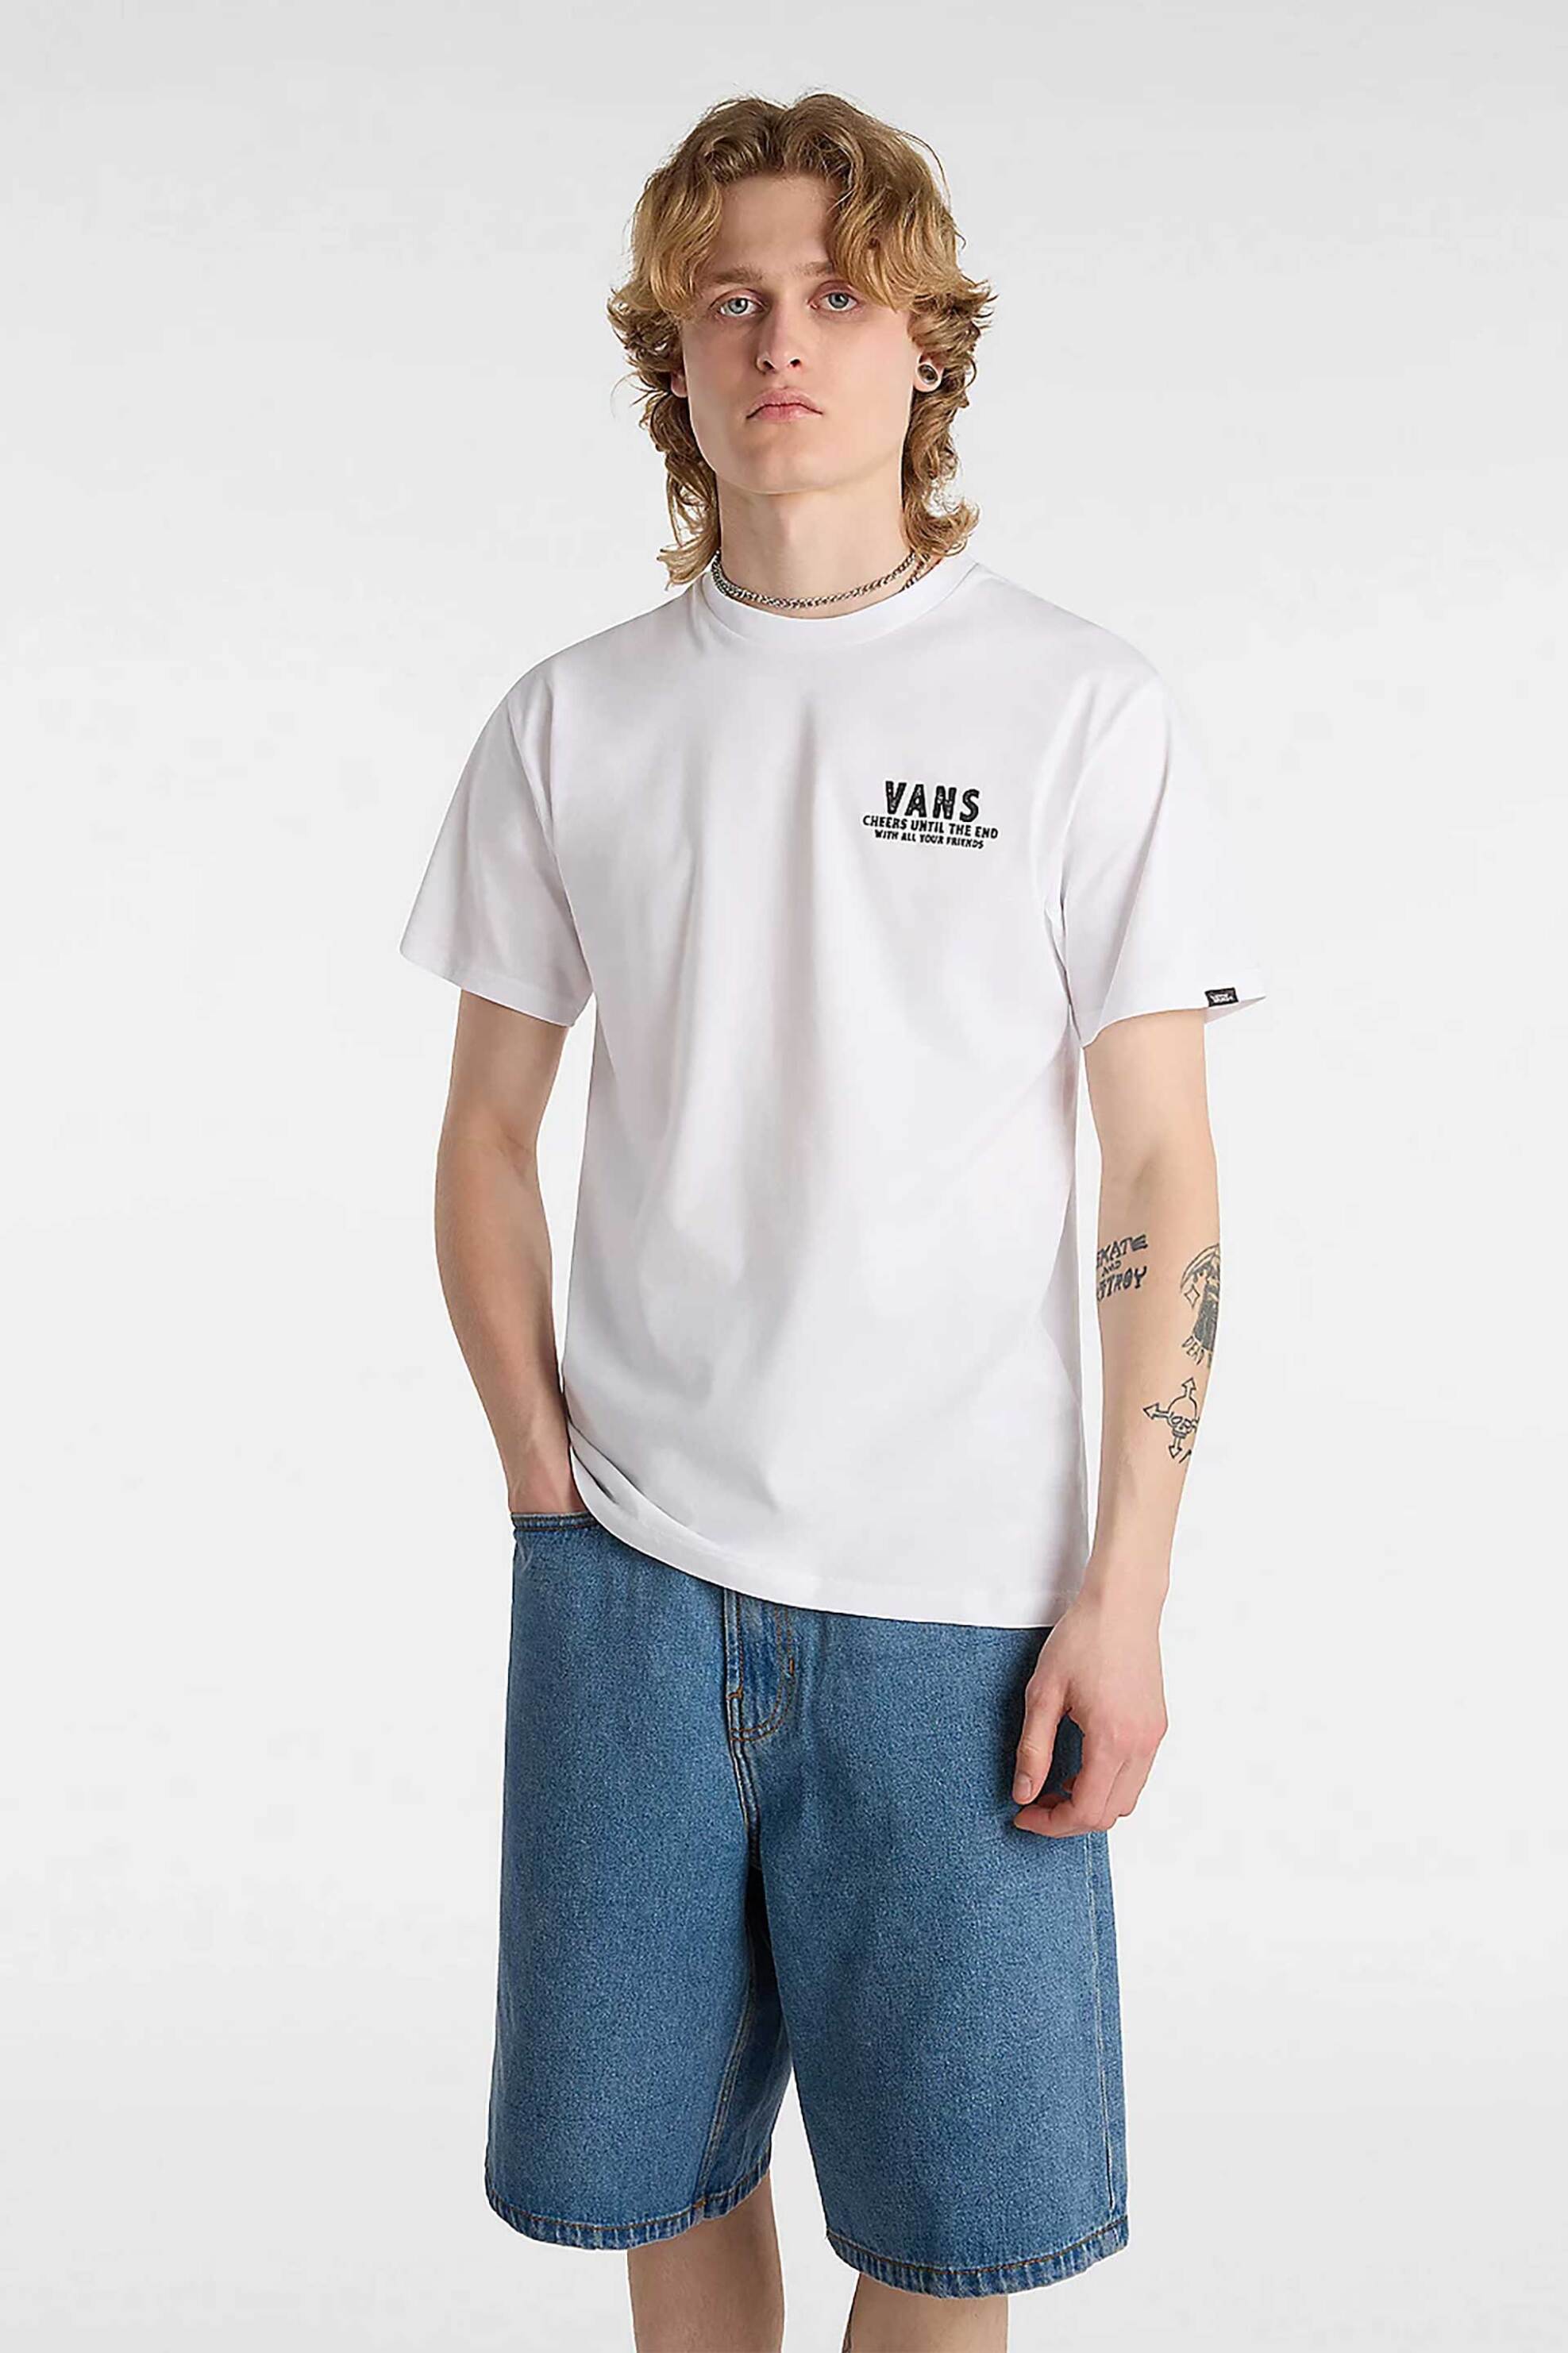 Ανδρική Μόδα > Ανδρικά Ρούχα > Ανδρικές Μπλούζες > Ανδρικά T-Shirts Vans ανδρικό T-shirt με print "Cold One Calling" - VN000KB9WHT1 Λευκό